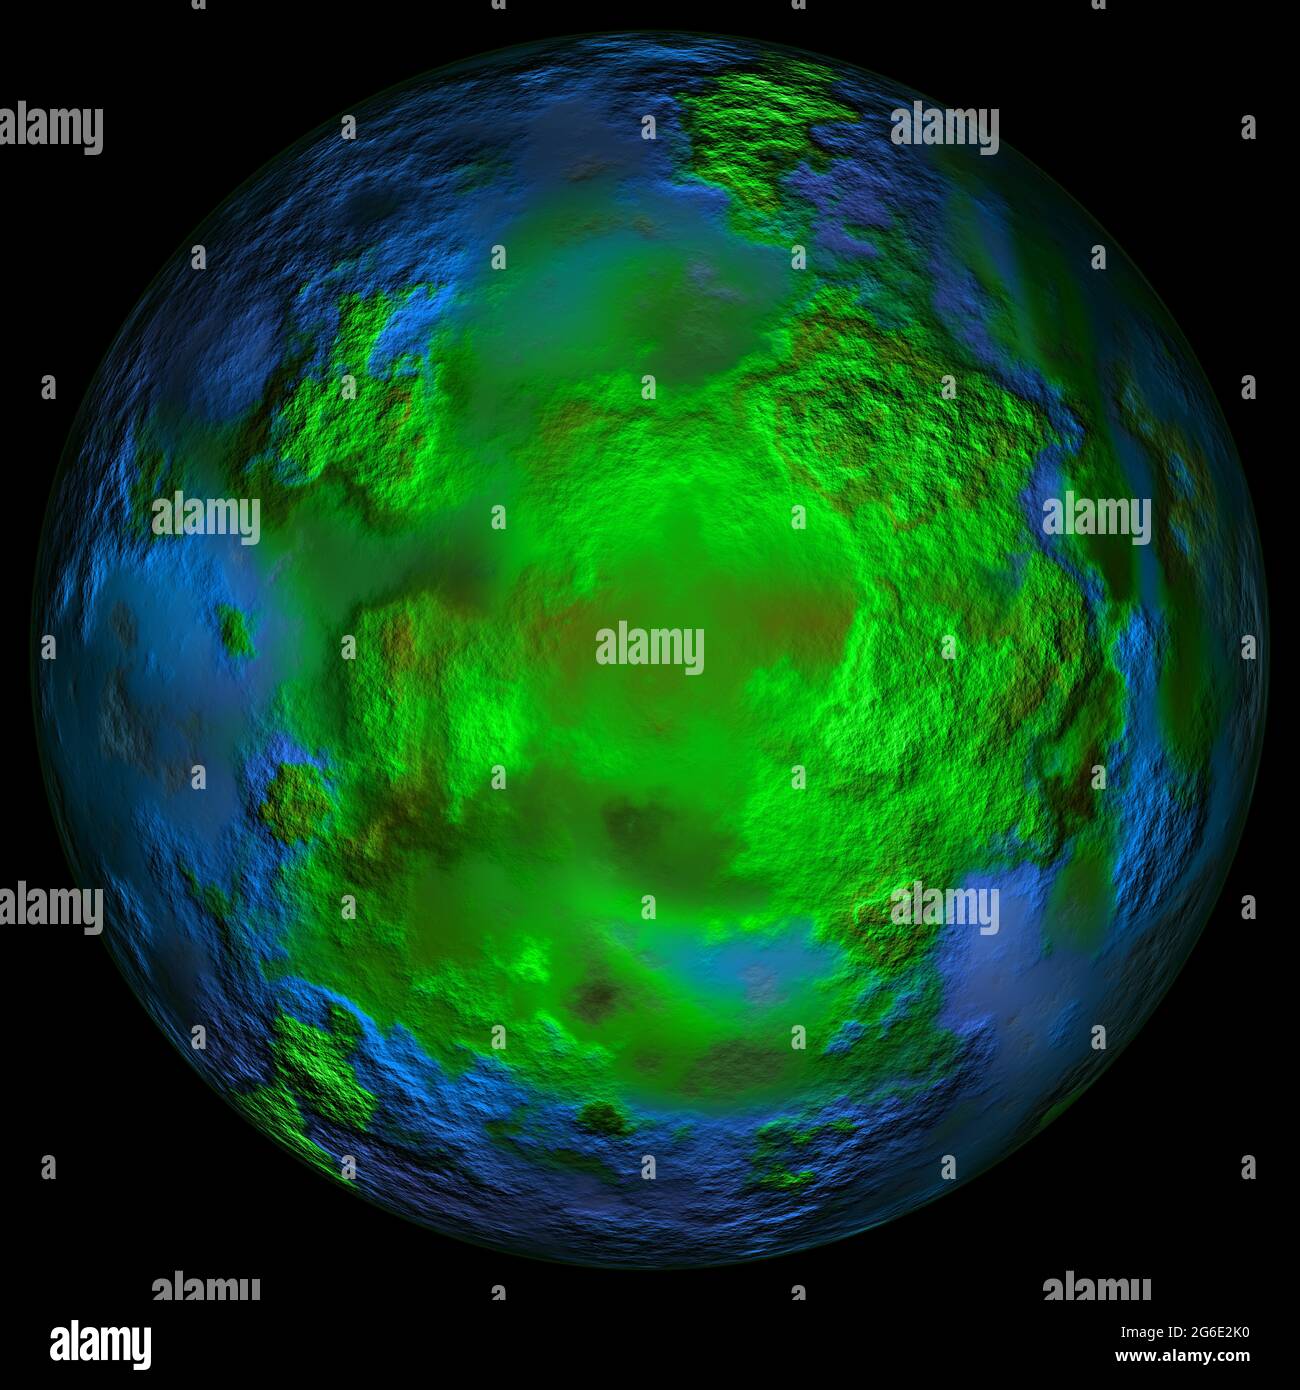 Immagine digitale ad alta risoluzione del pianeta Urano Foto Stock